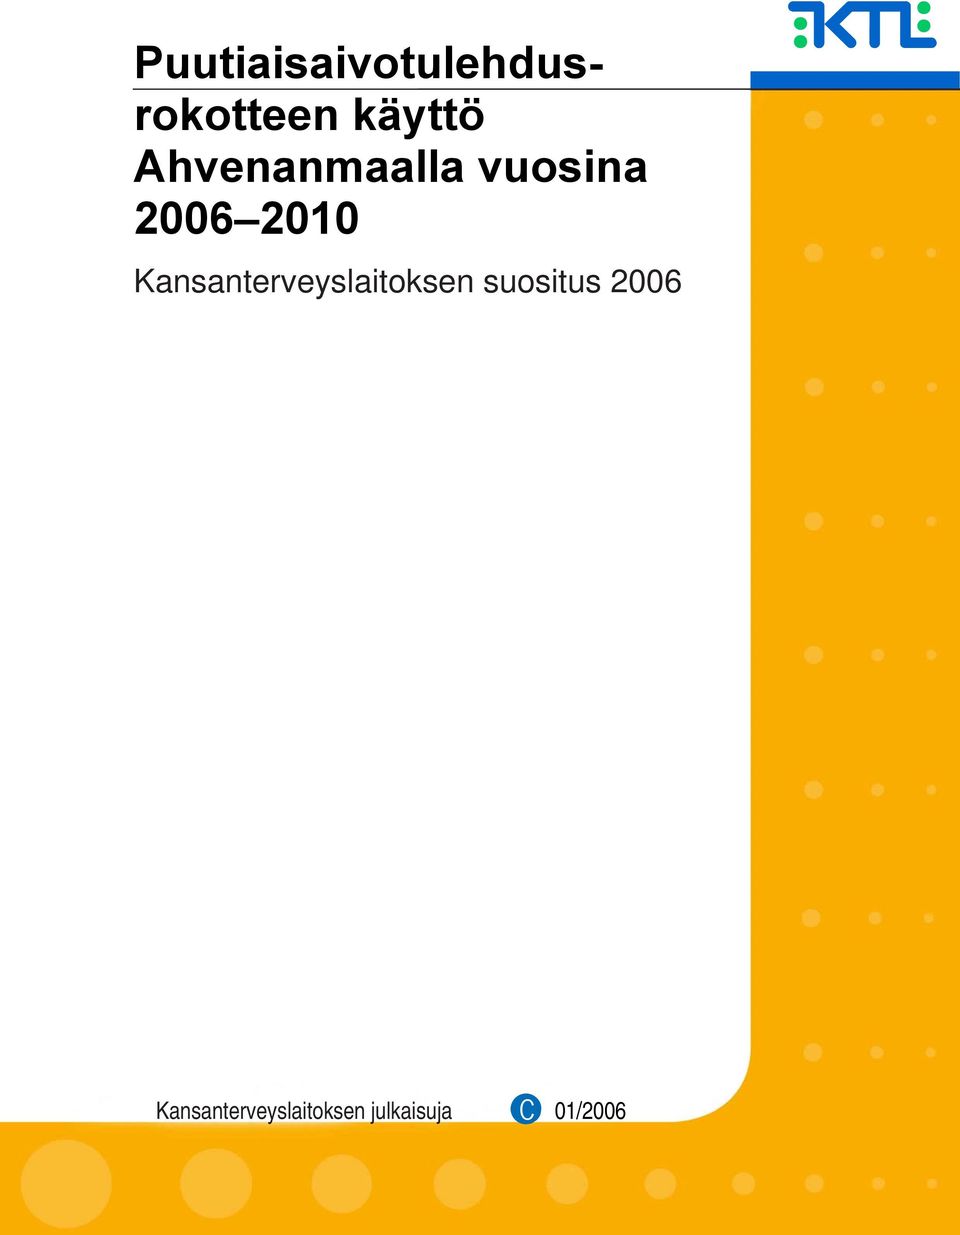 Kansanterveyslaitoksen suositus 2006